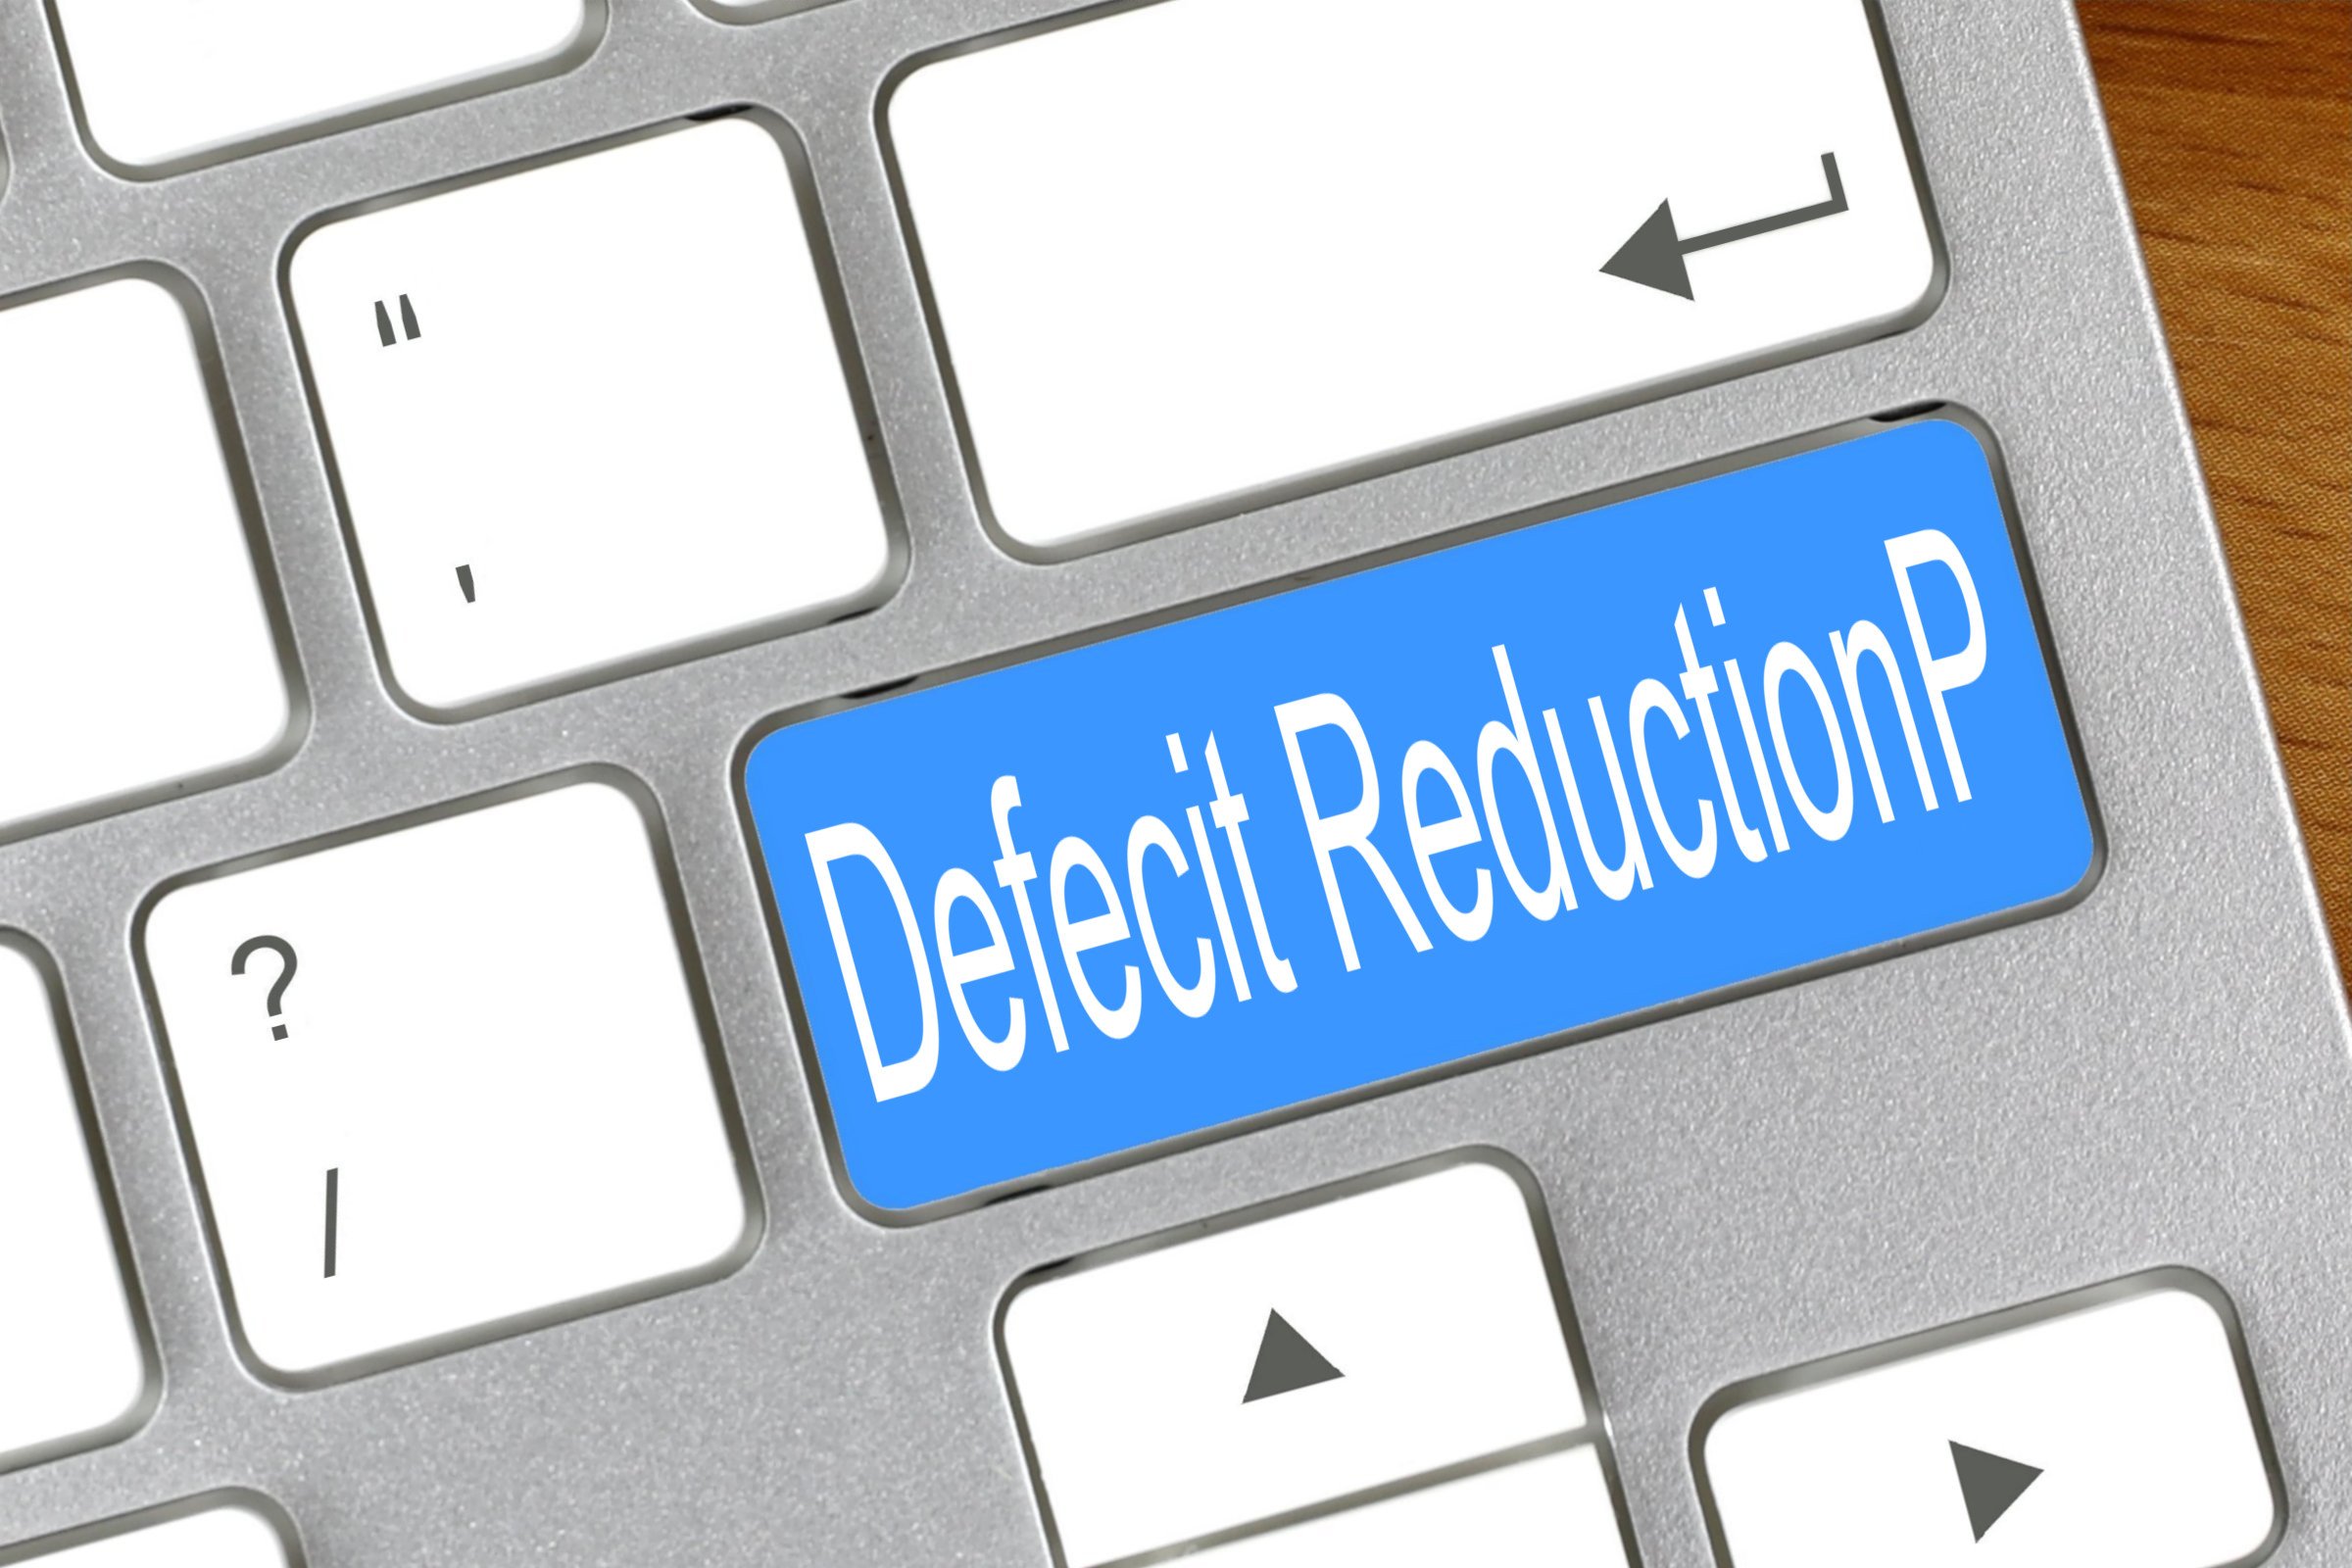 defecit reduction